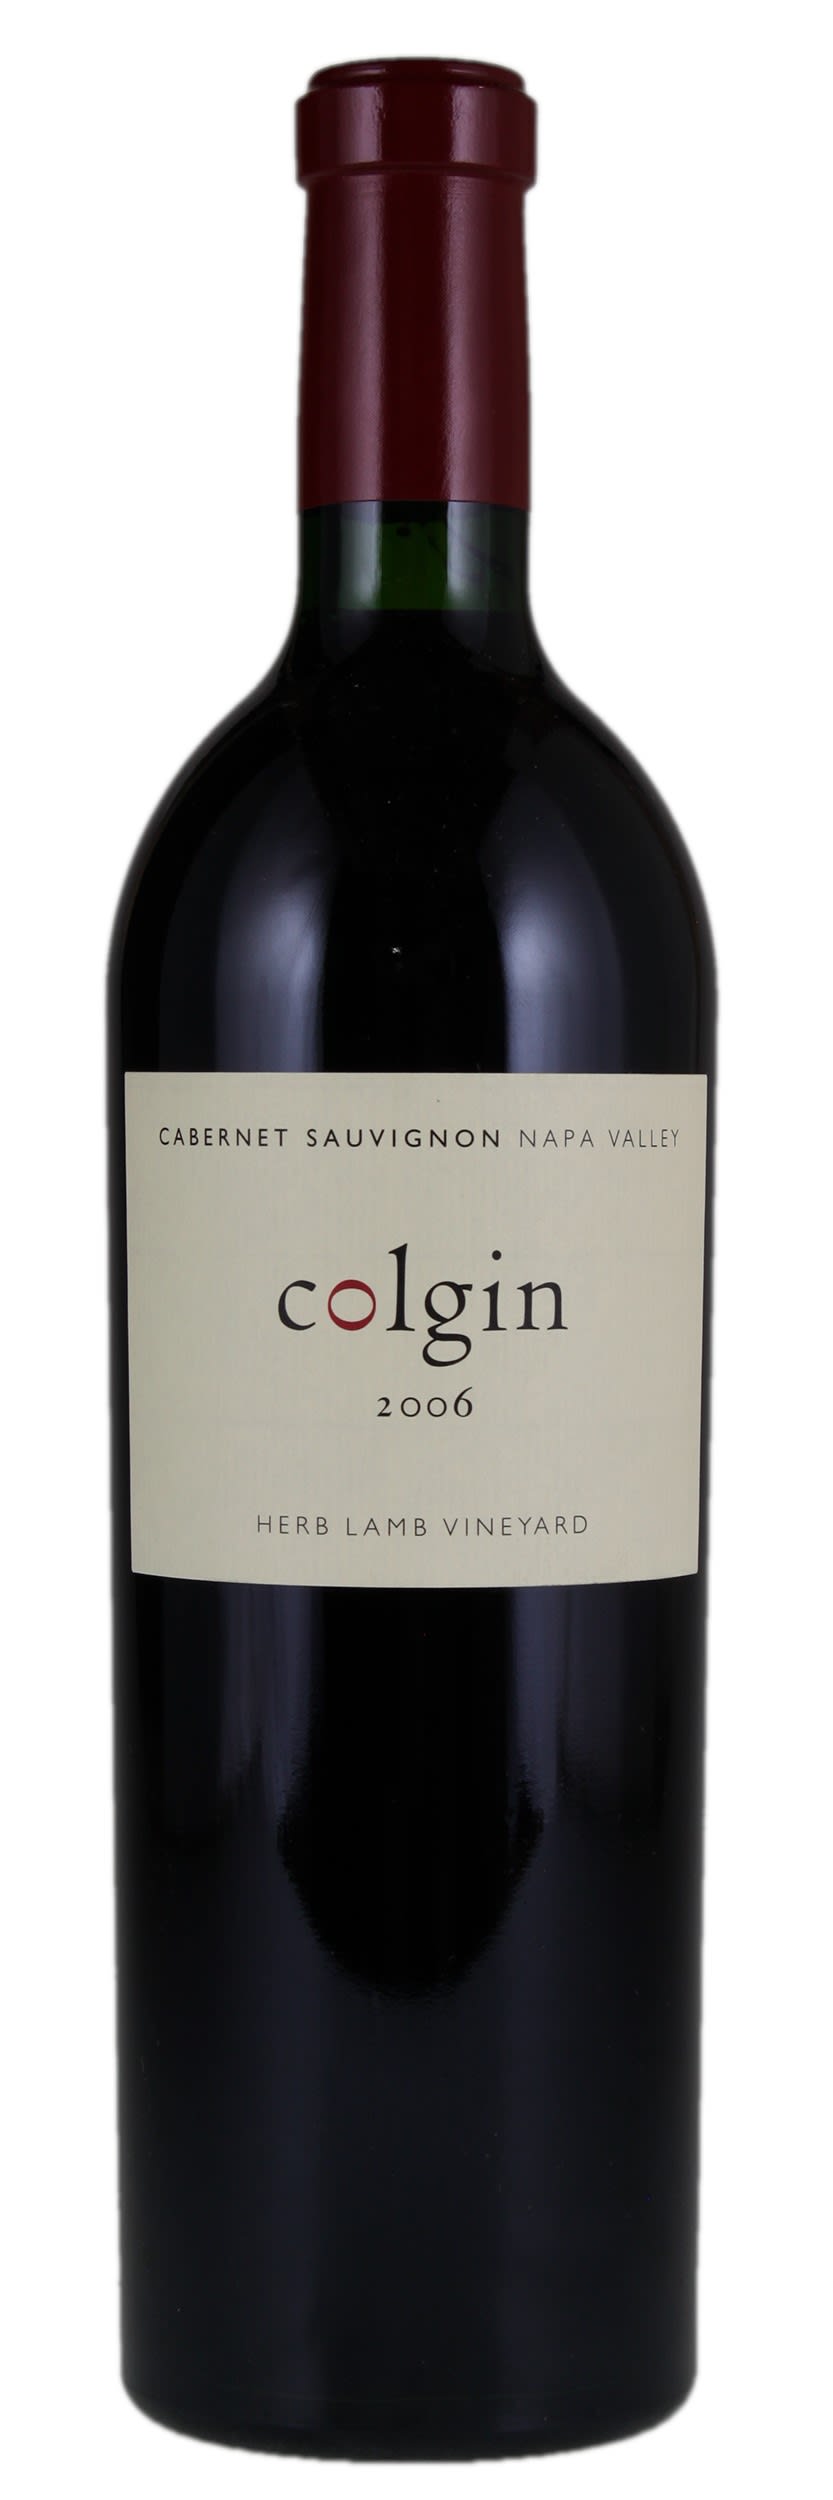 2006 Colgin Herb Lamb Vineyard Cabernet, Napa